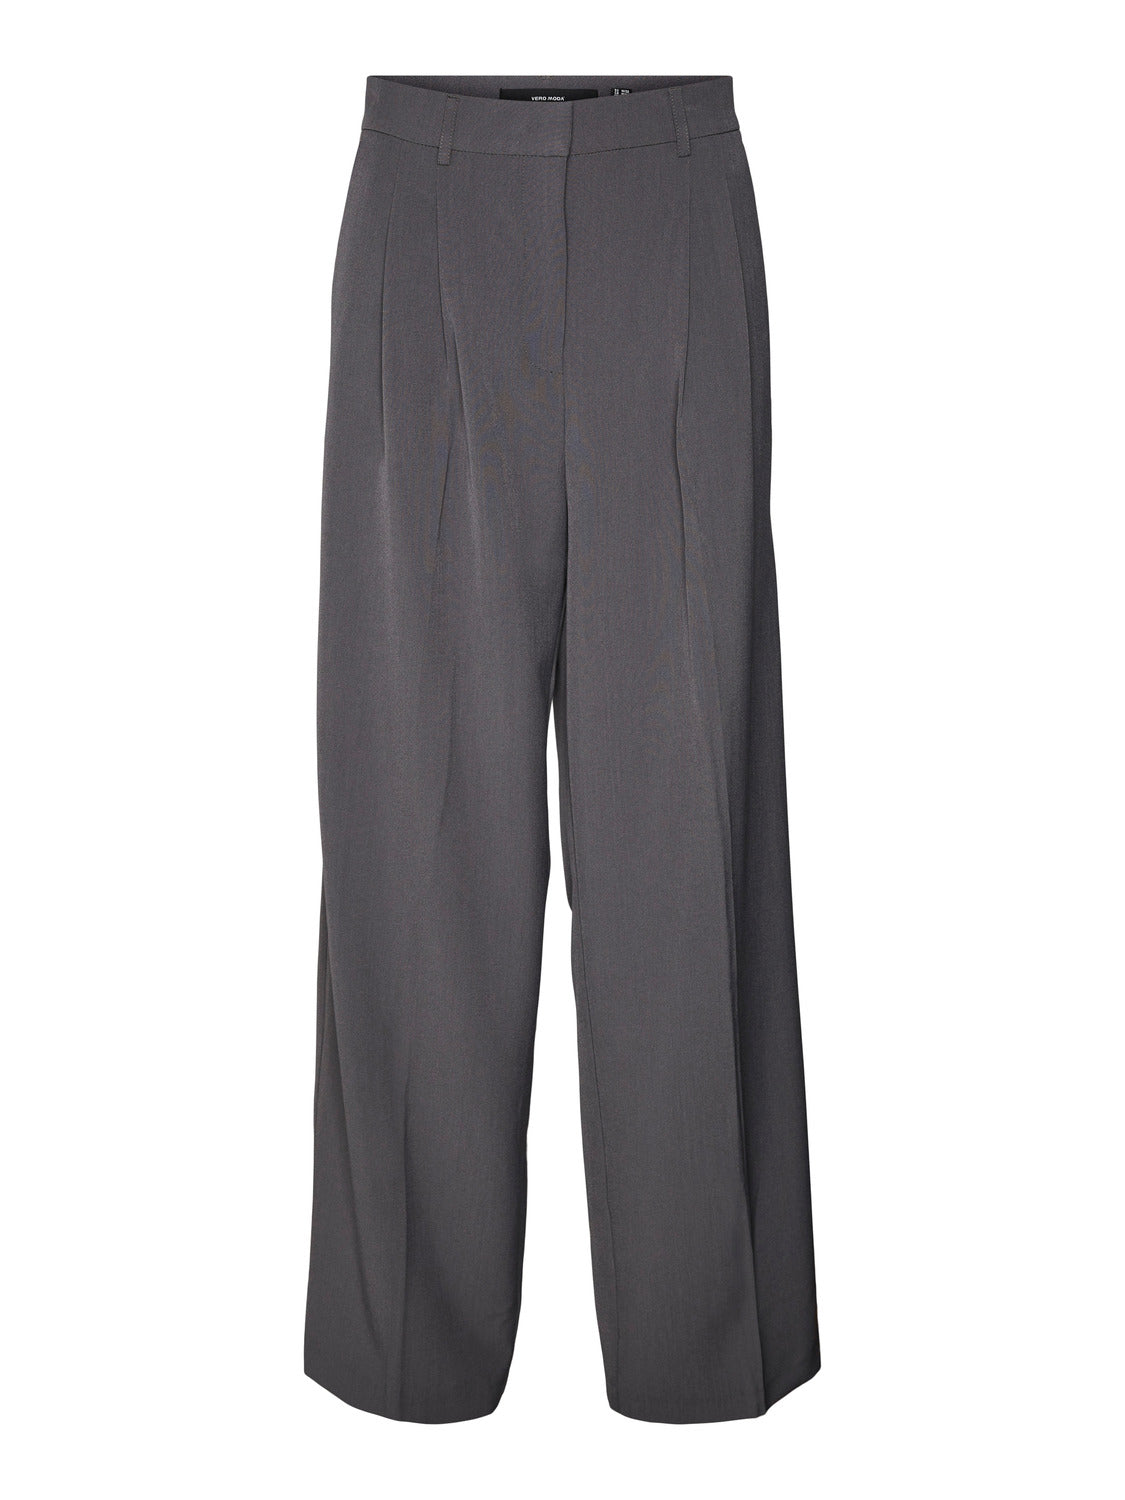 VMTROIAN Pants - Grey Pinstripe